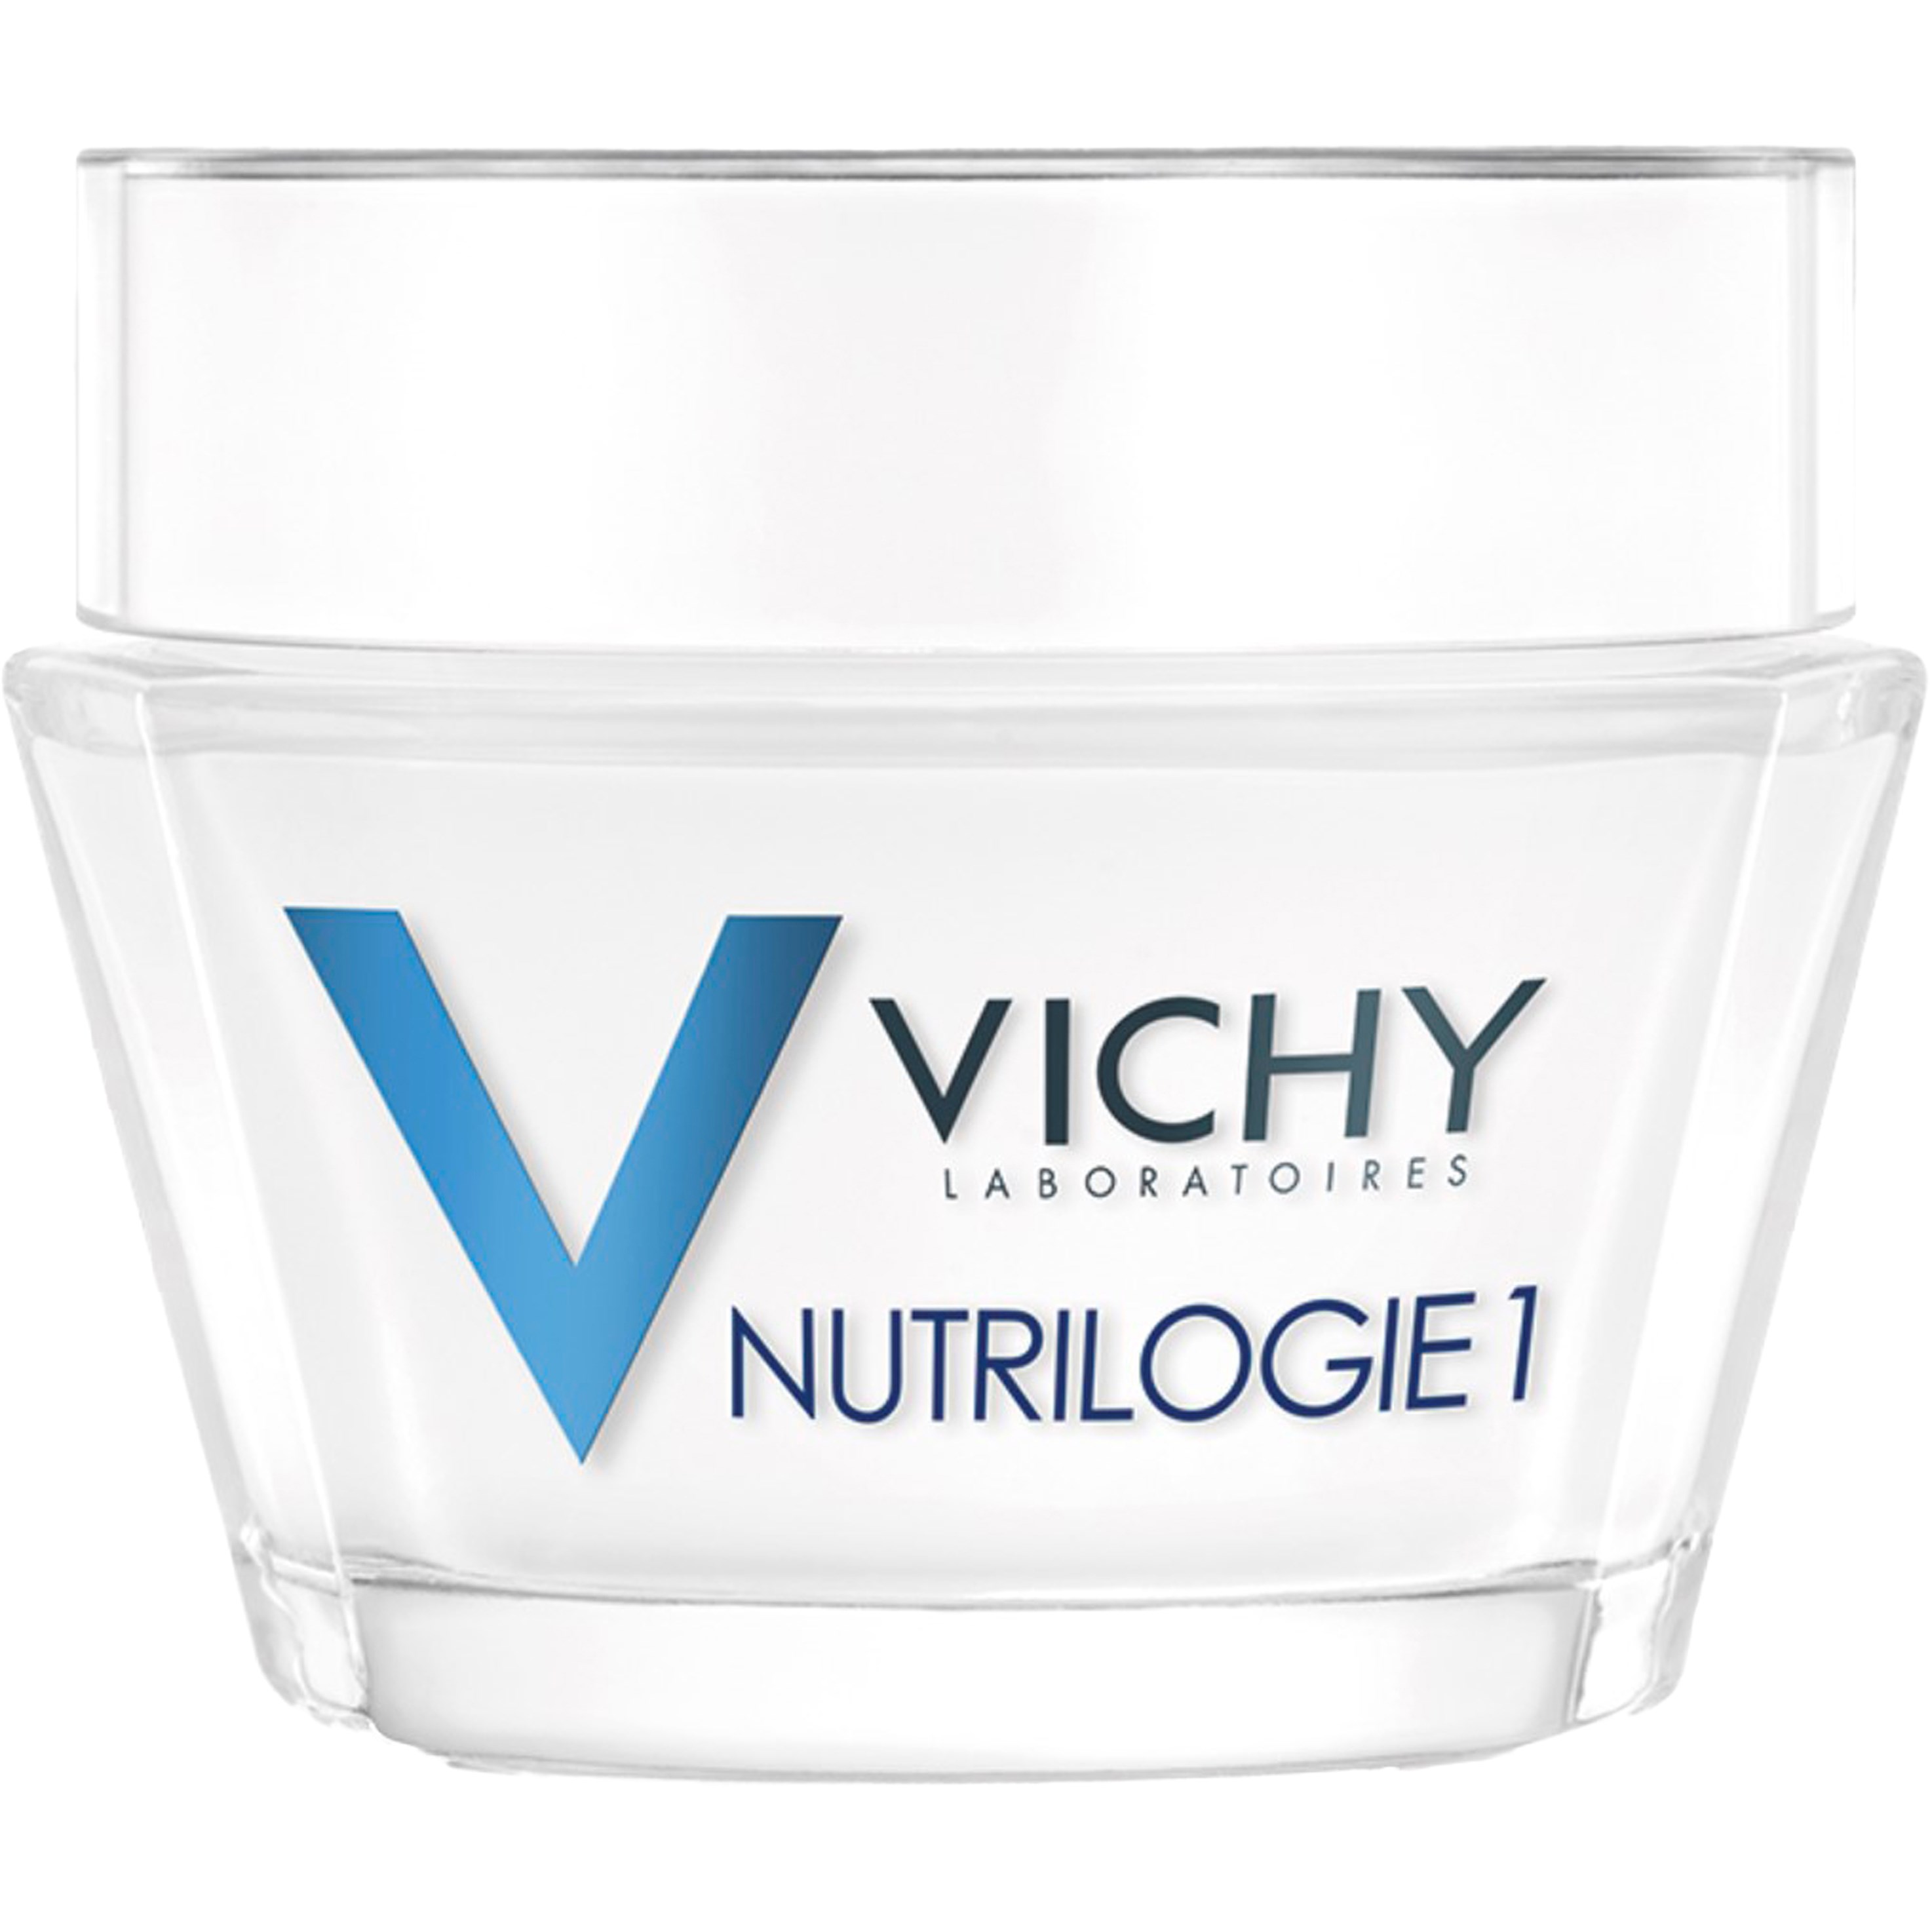 VICHY Nutgrilogie 1 ansiktscreme 50 ml